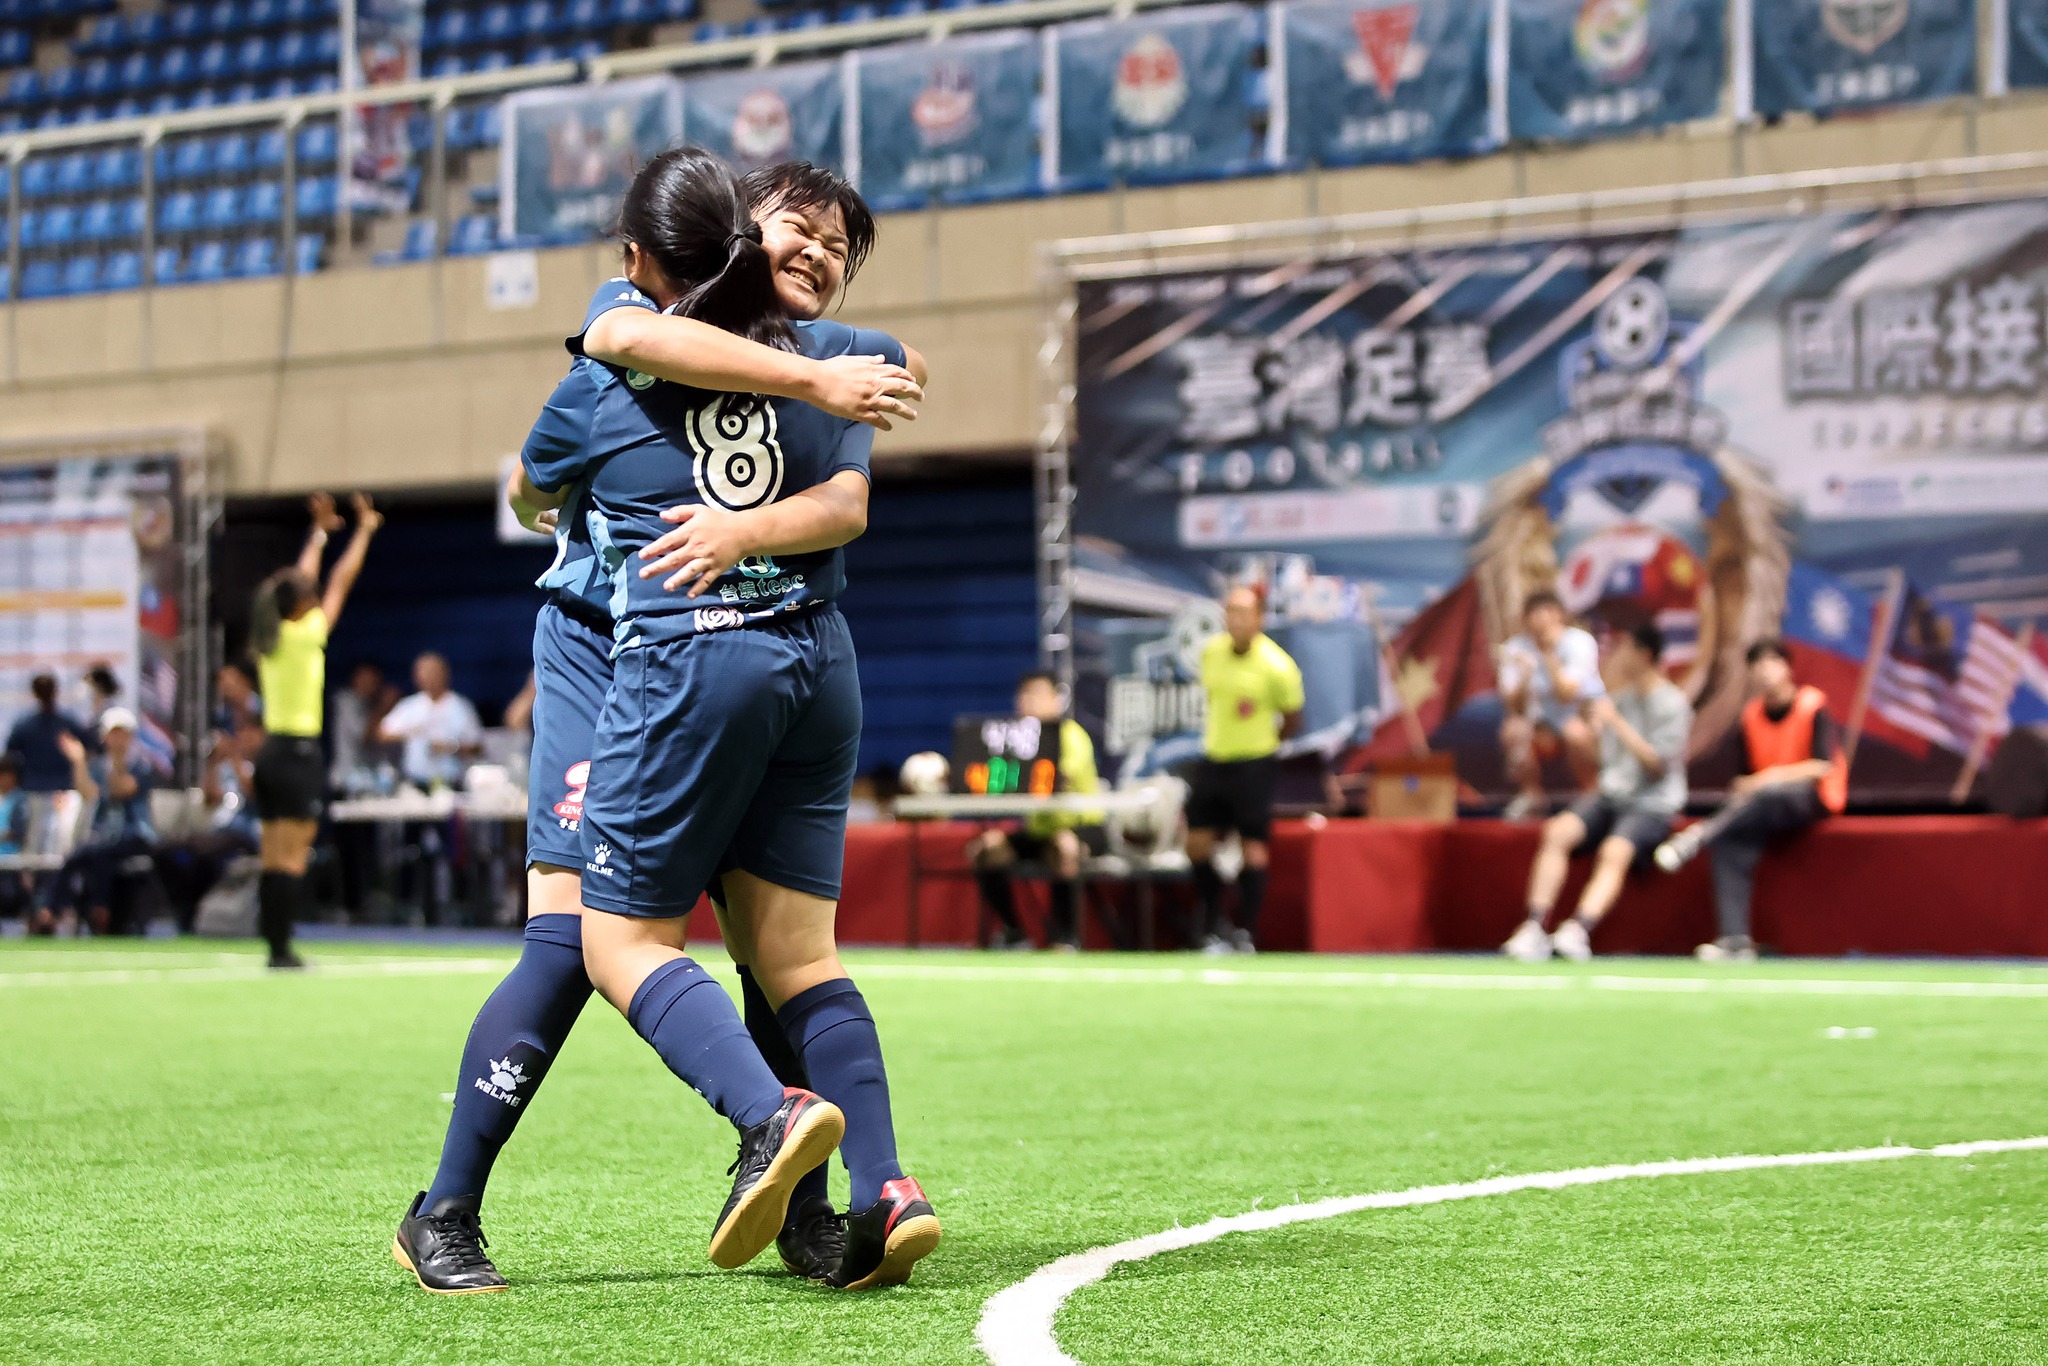 ทีมจากโรงเรียนประถมศึกษาฮัวเหลียนตงลี่จากไต้หวันคว้าแชมป์หญิงไปครองได้สำเร็จ  ภาพ／จากเฟซบุ๊ก國小足球世界盃